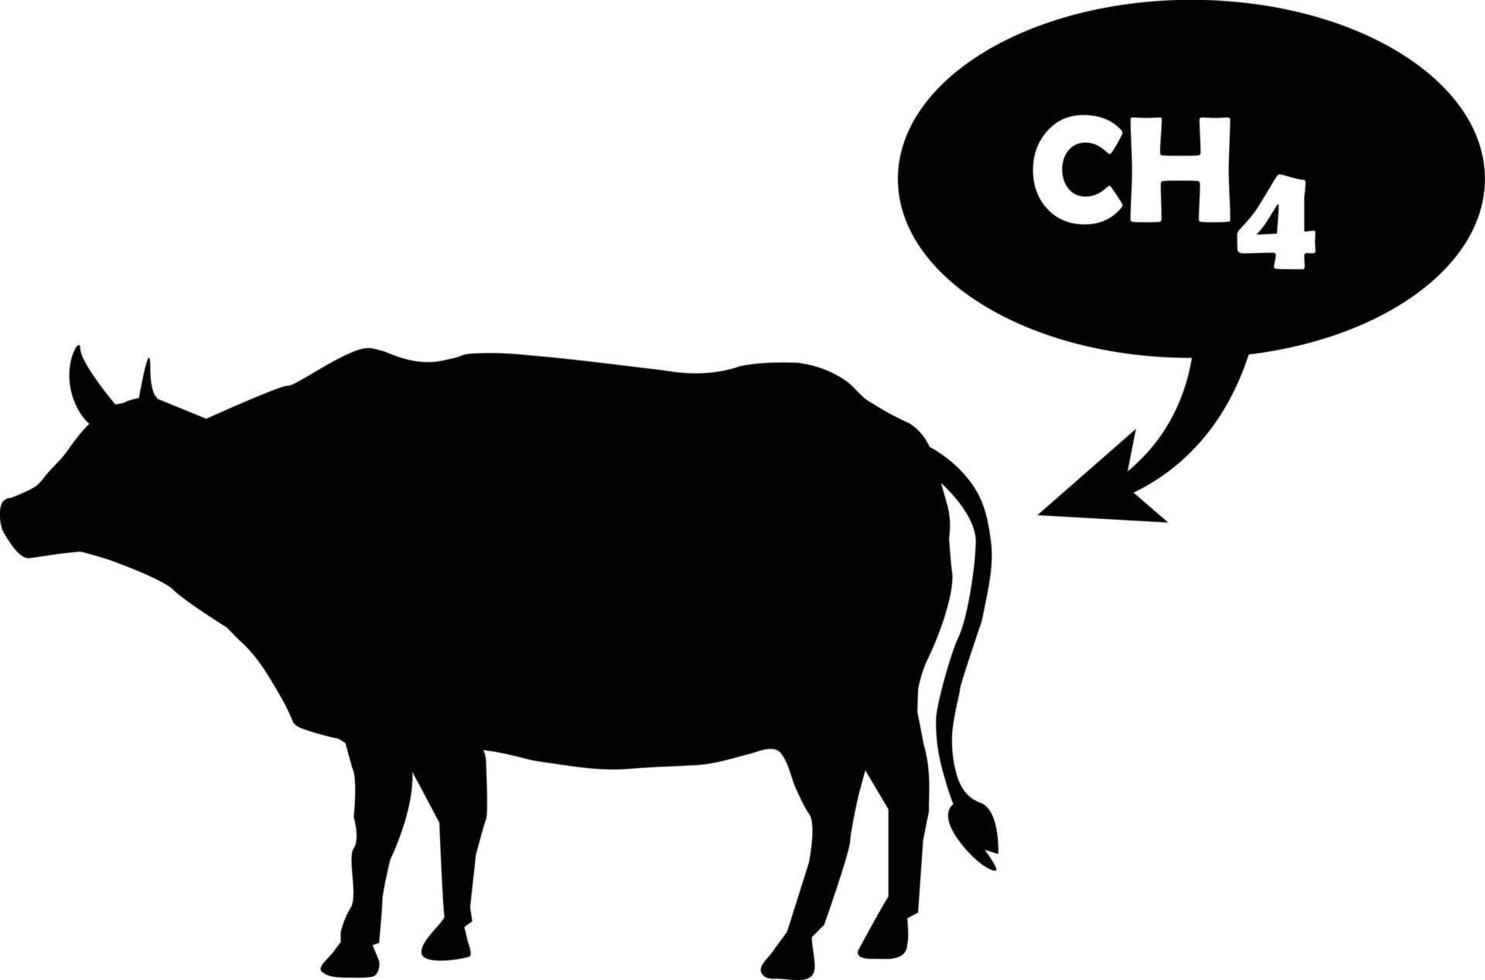 el metano es liberado por la vaca. signo de emisiones de ch4. emisiones de metano del concepto de ganado. estilo plano vector